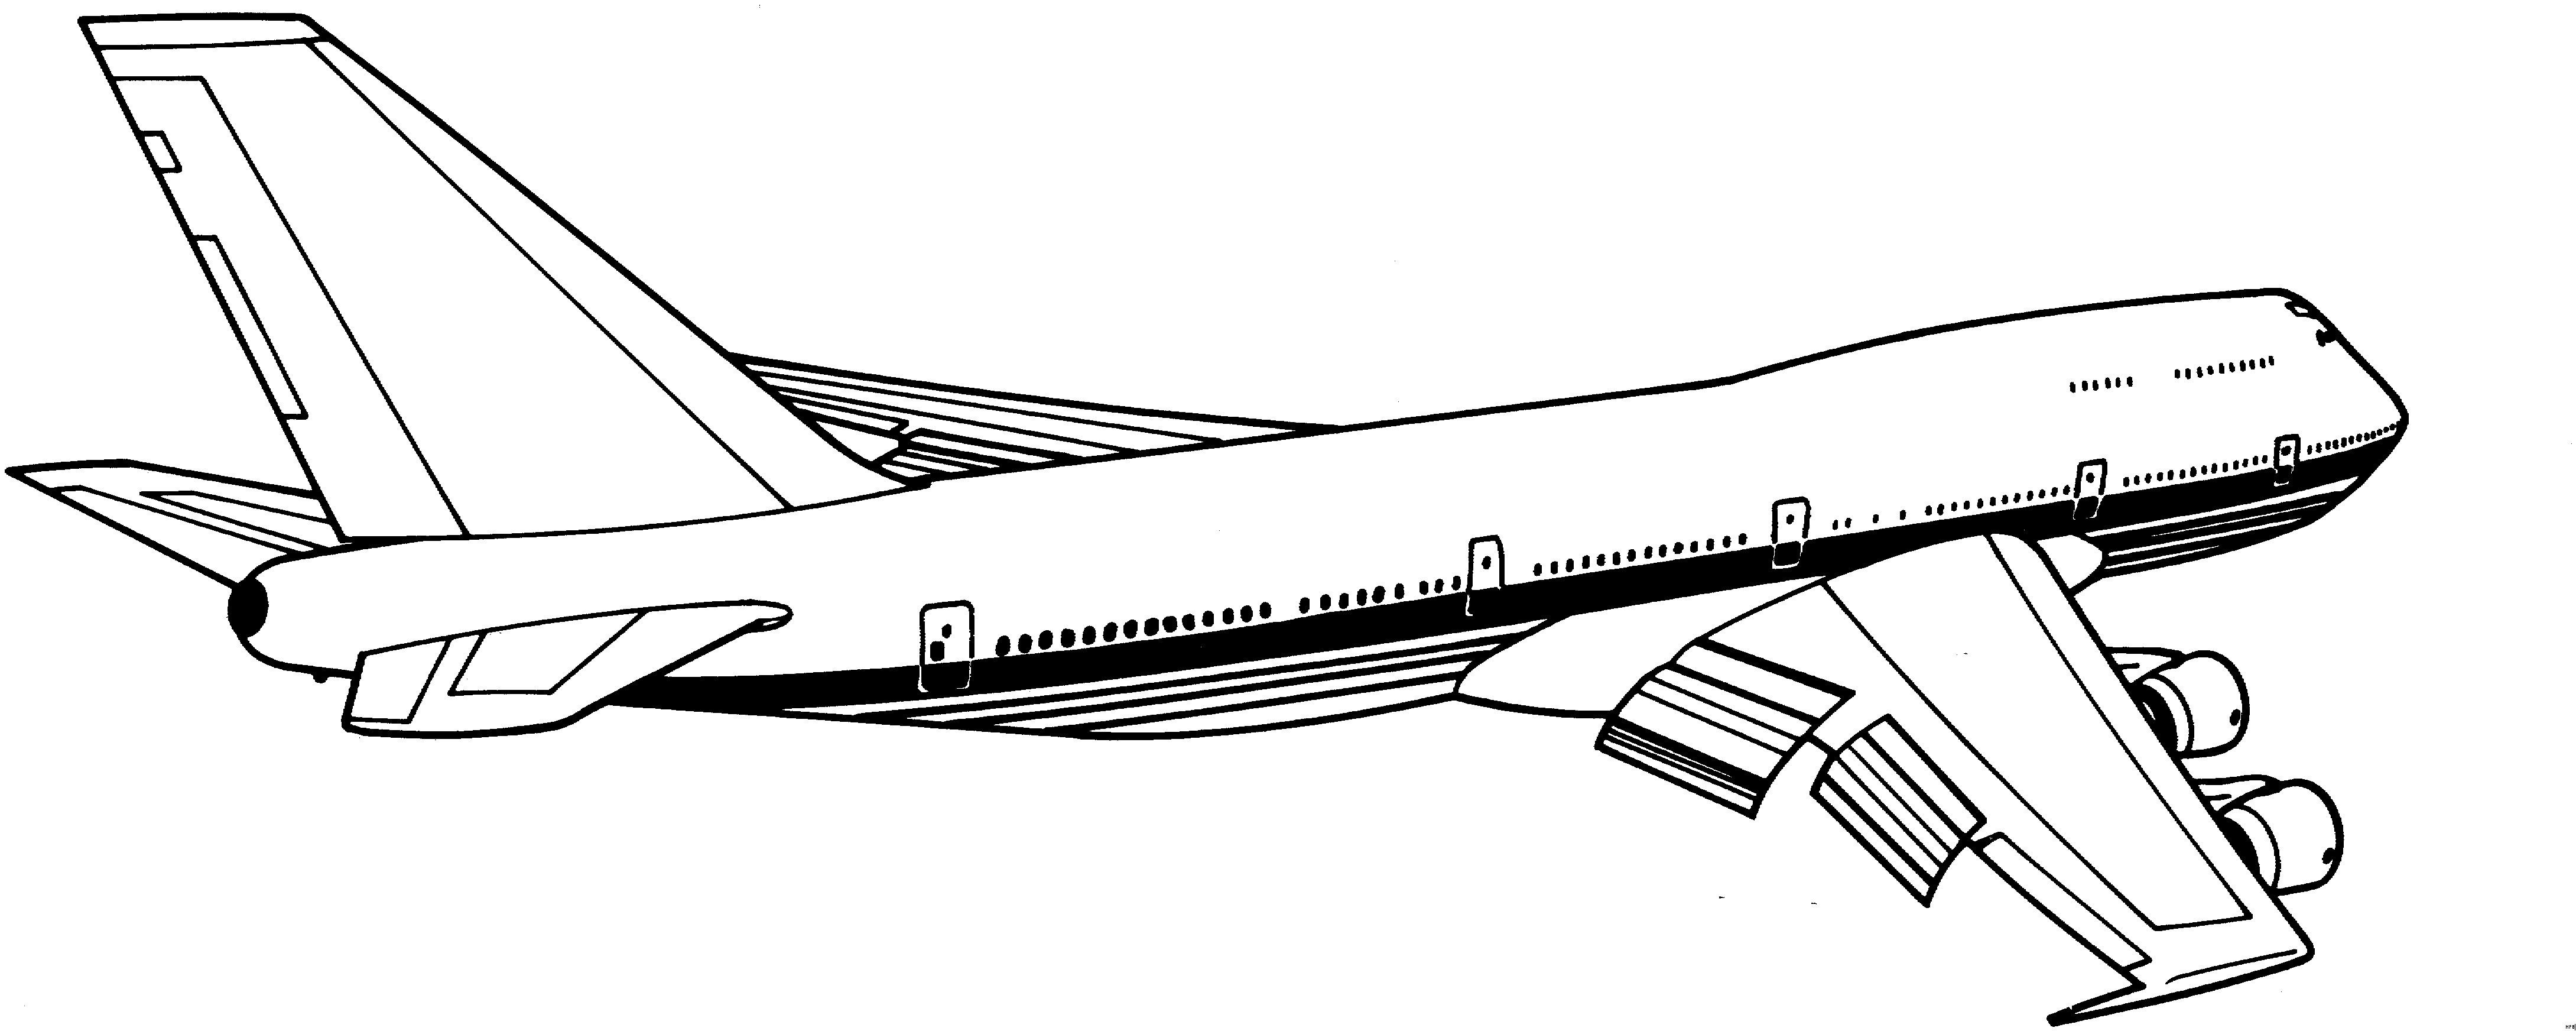 Download Malvorlagen Flugzeug Für Kinder Malvorlagen Flugzeug